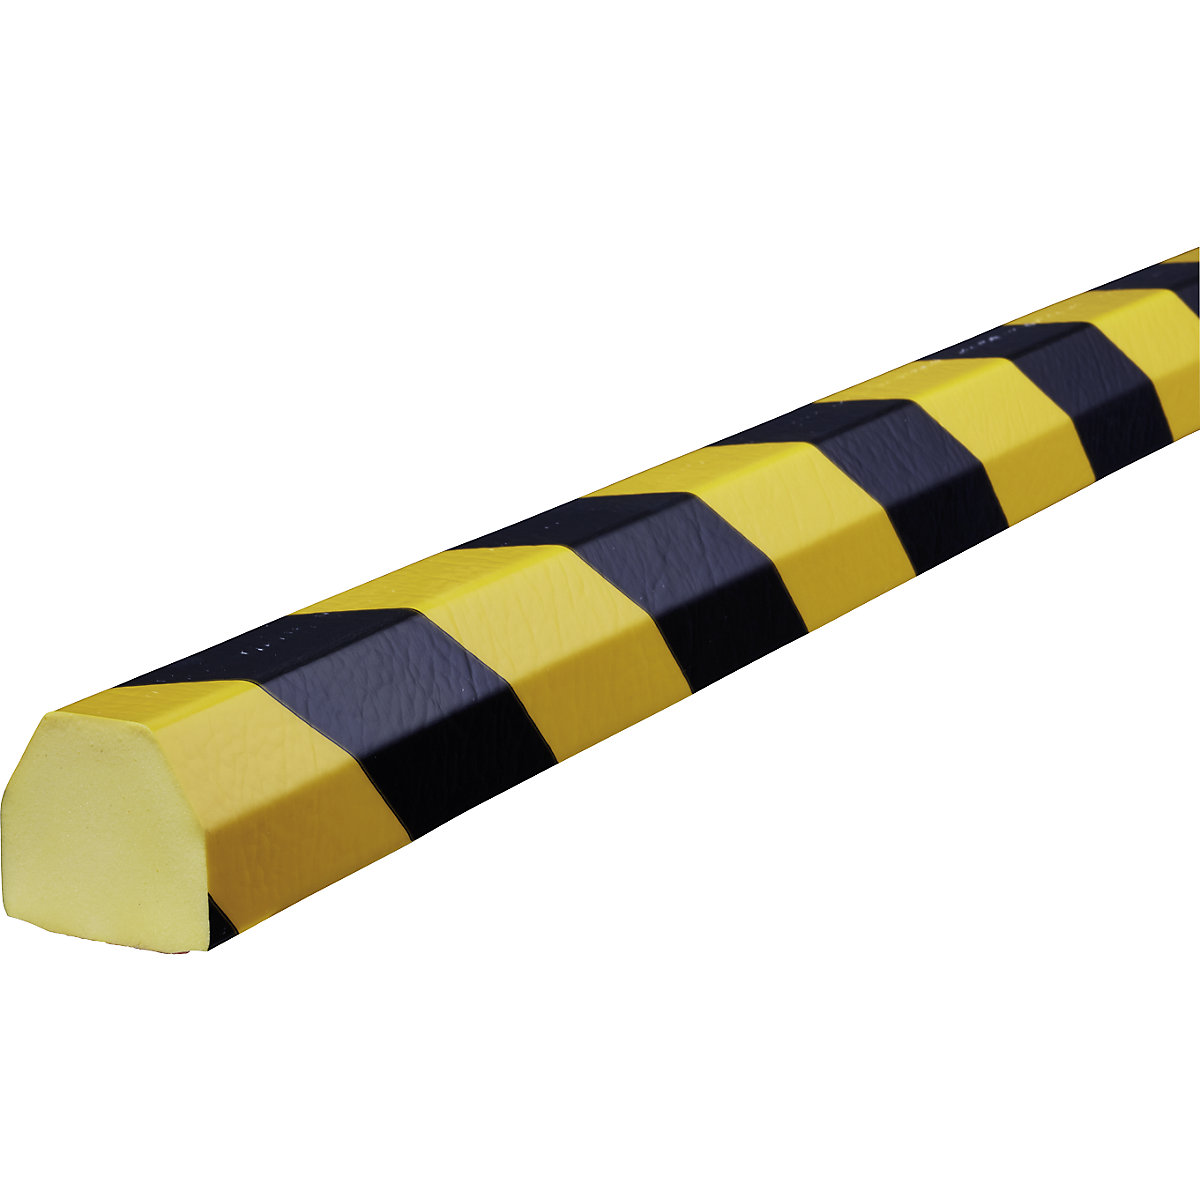 Protection des surfaces Knuffi® – SHG, type CC, 1 rouleau de 5 m, noir / jaune